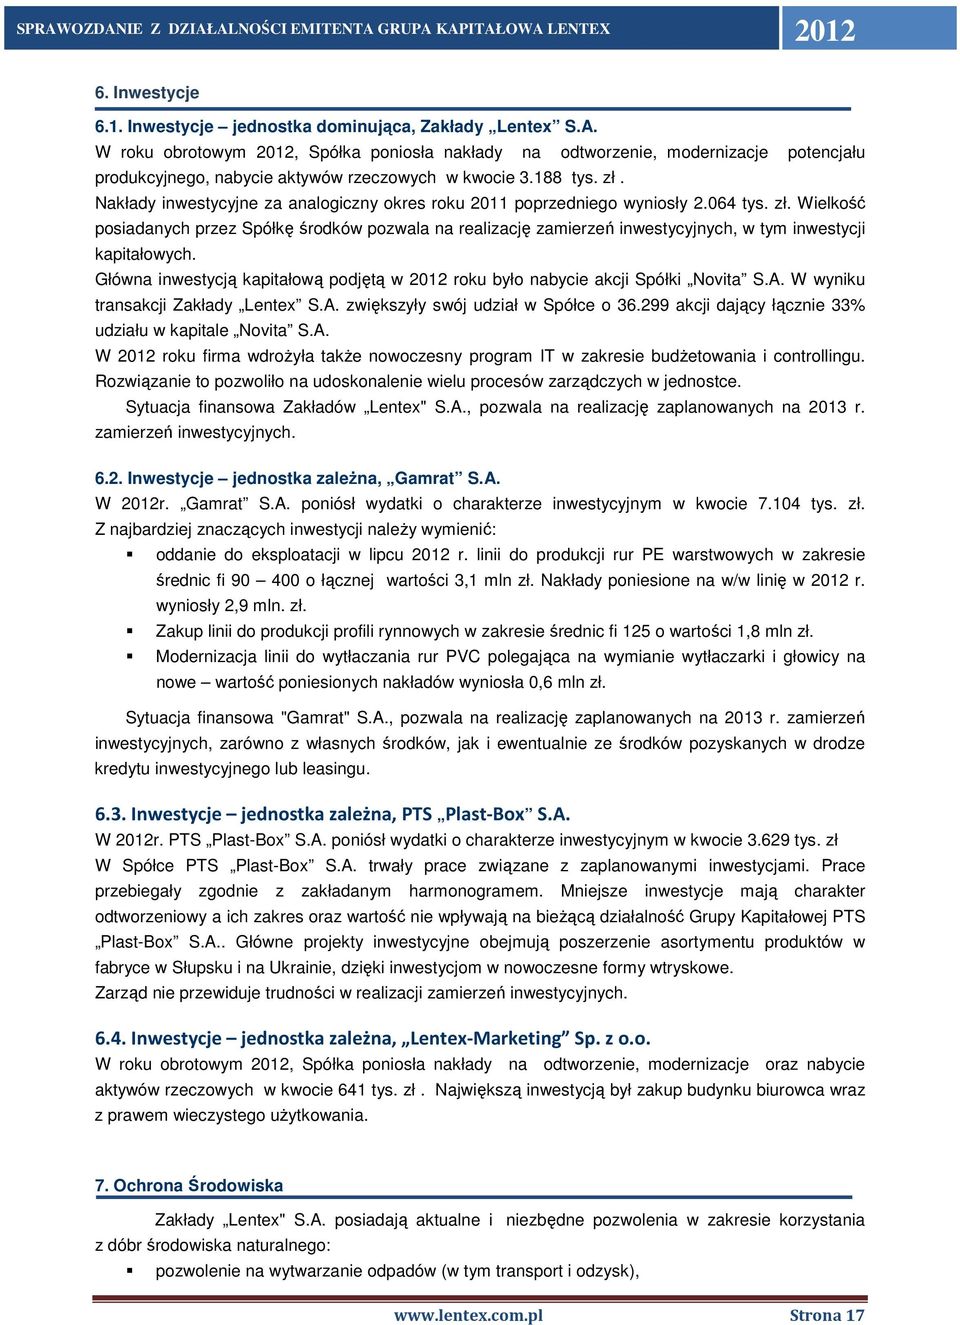 Nakłady inwestycyjne za analogiczny okres roku 2011 poprzedniego wyniosły 2.064 tys. zł.